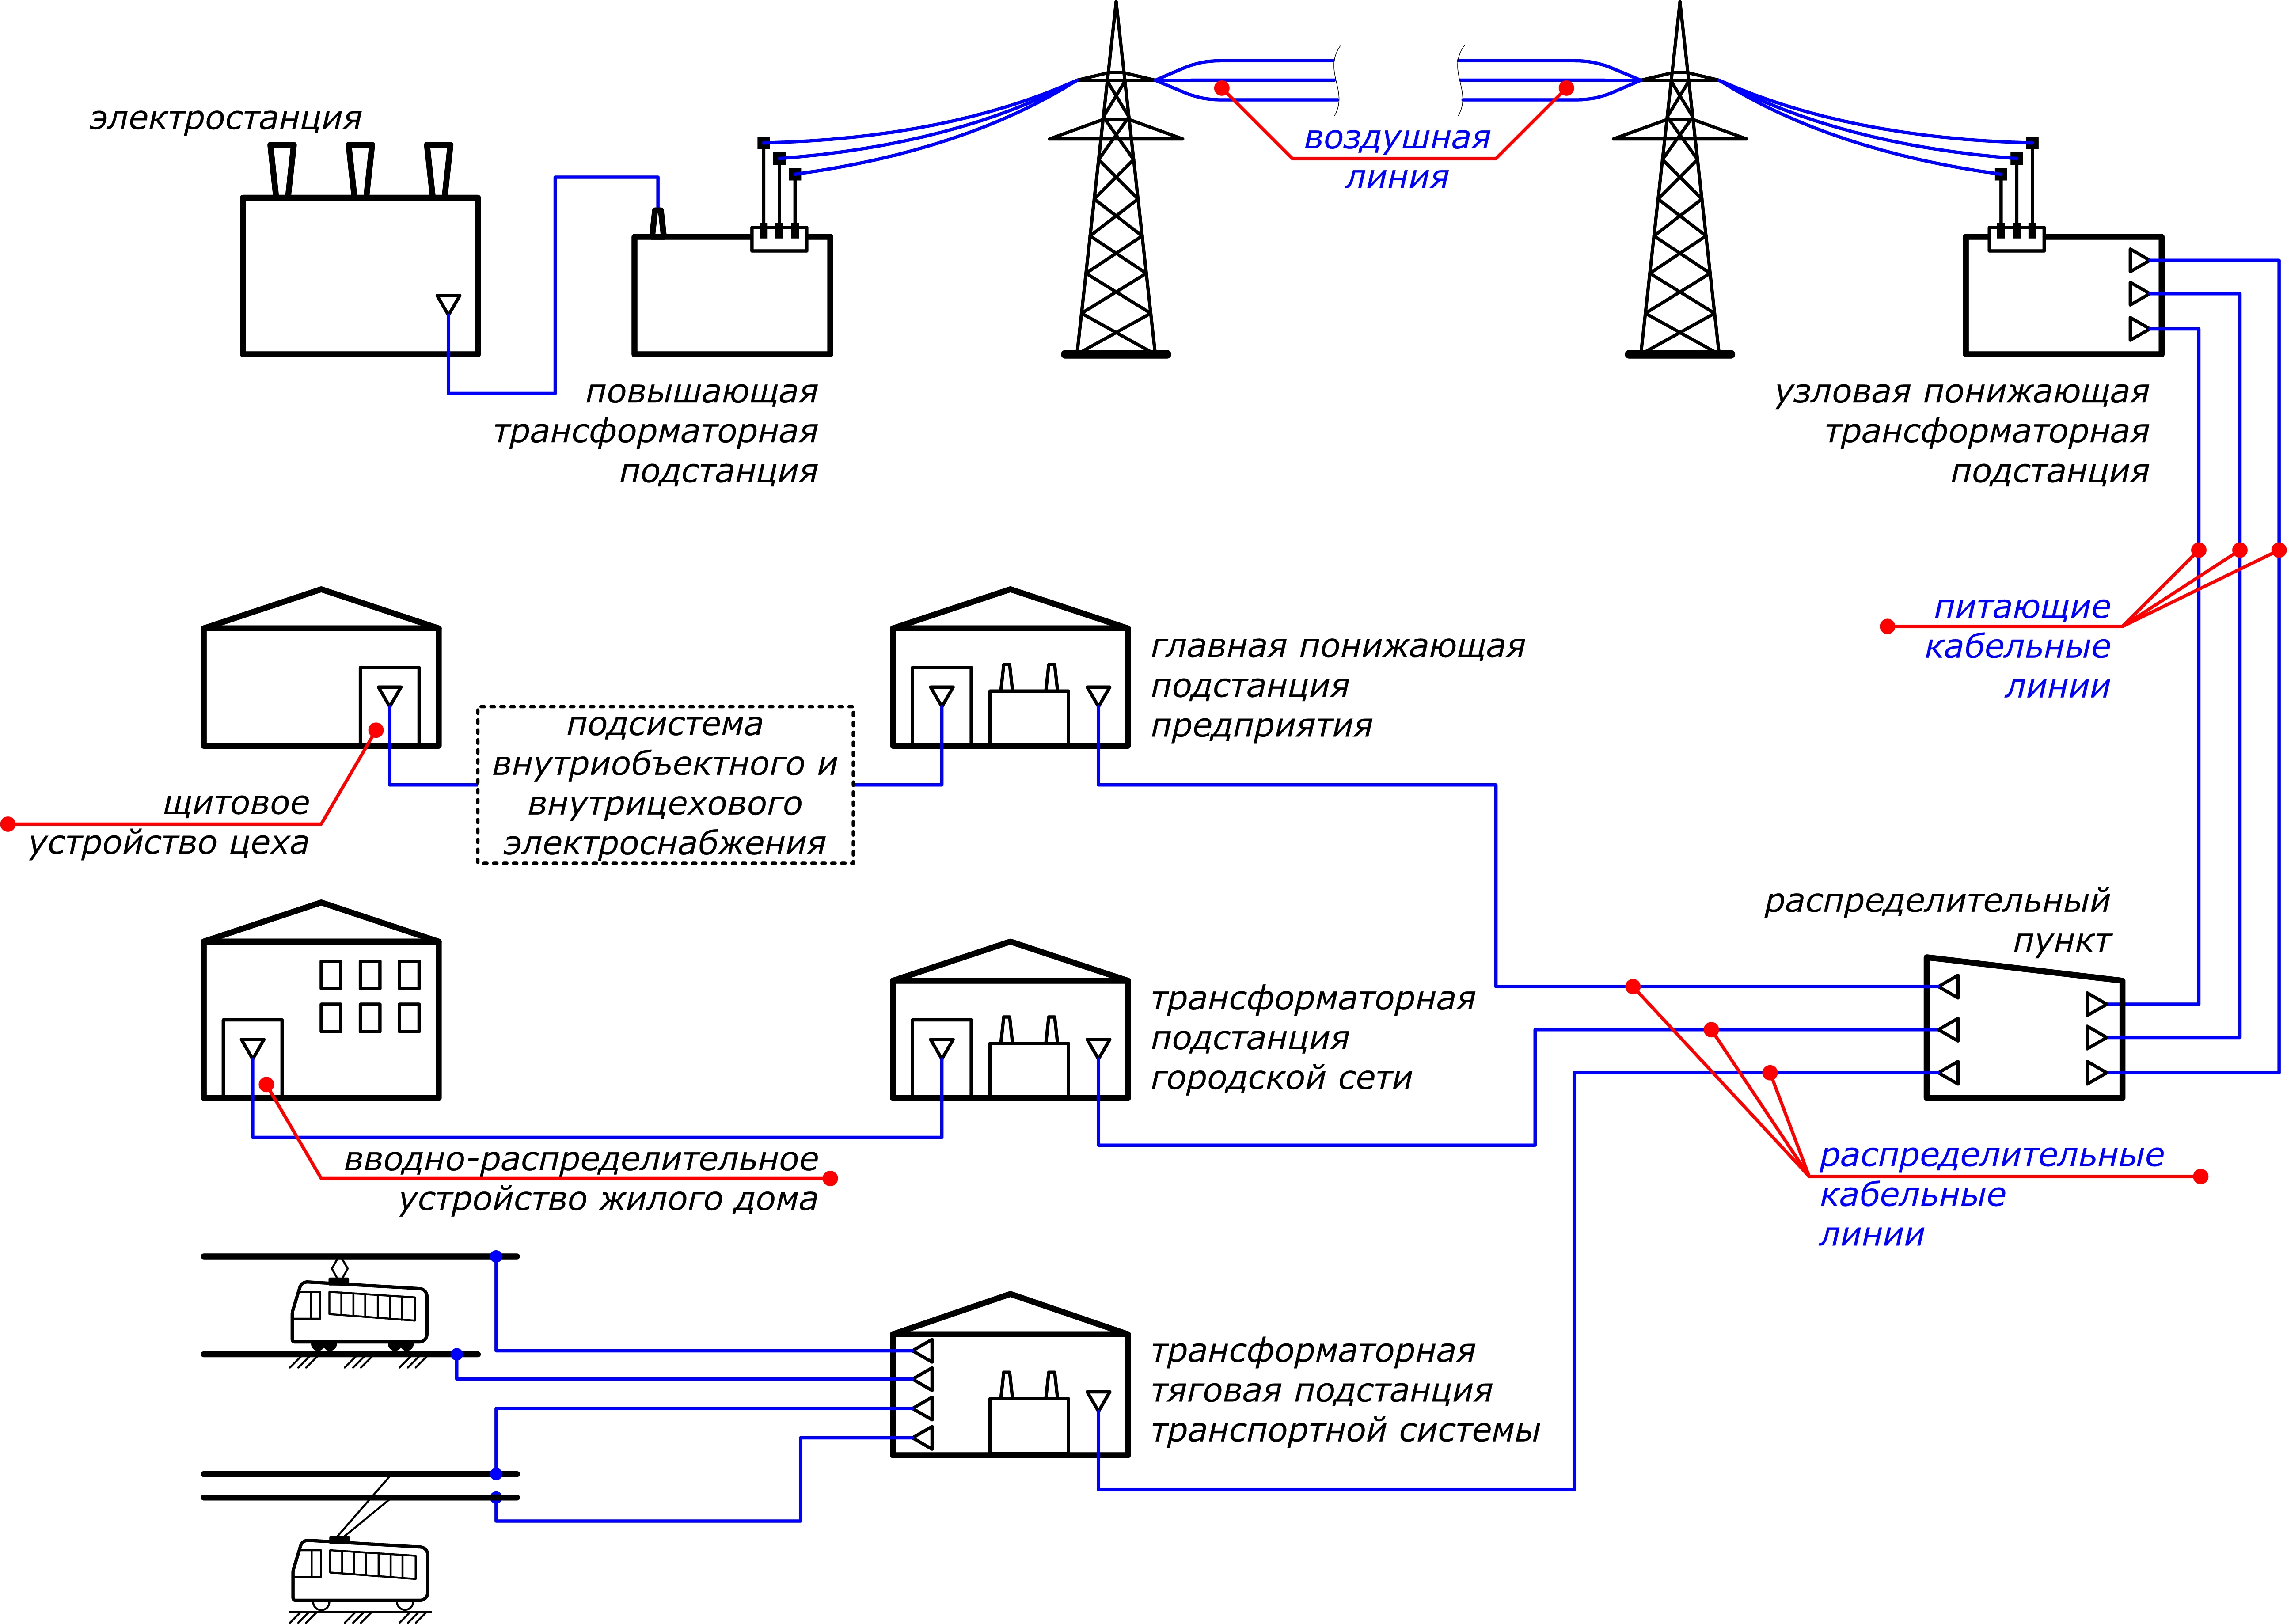 Электроснабжение 2 диапазон что значит. Схема подключения электроснабжения. Принципиальная схема распределения электроэнергии внутри объекта. Схема подключения потребителя к электрическим сетям. Схема распределения электроэнергии от электростанции к потребителю.